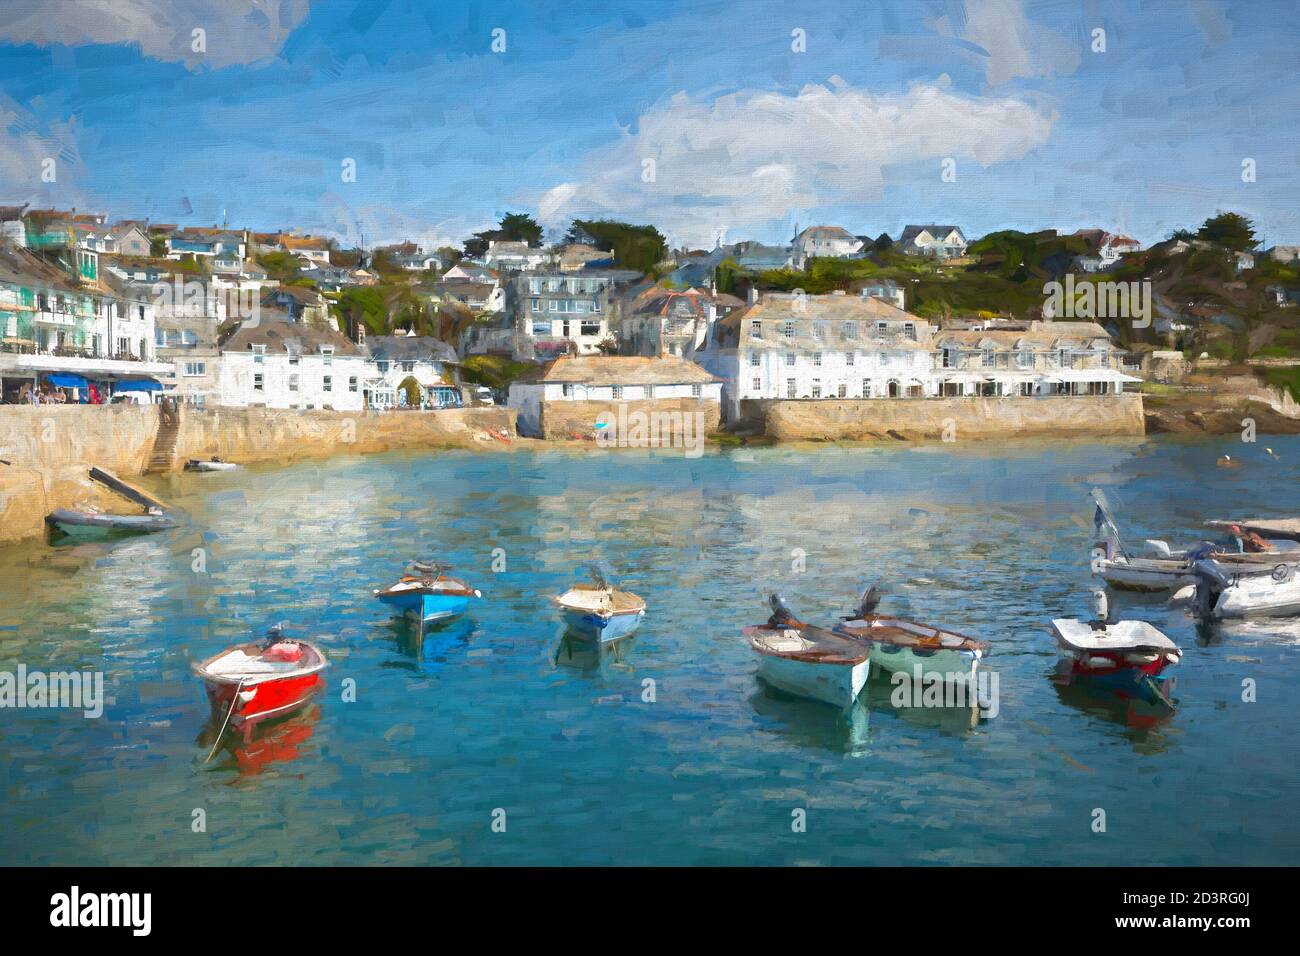 St Mawes Cornwall Roseland Peninsula England UK illustration like oil painting Stock Photo